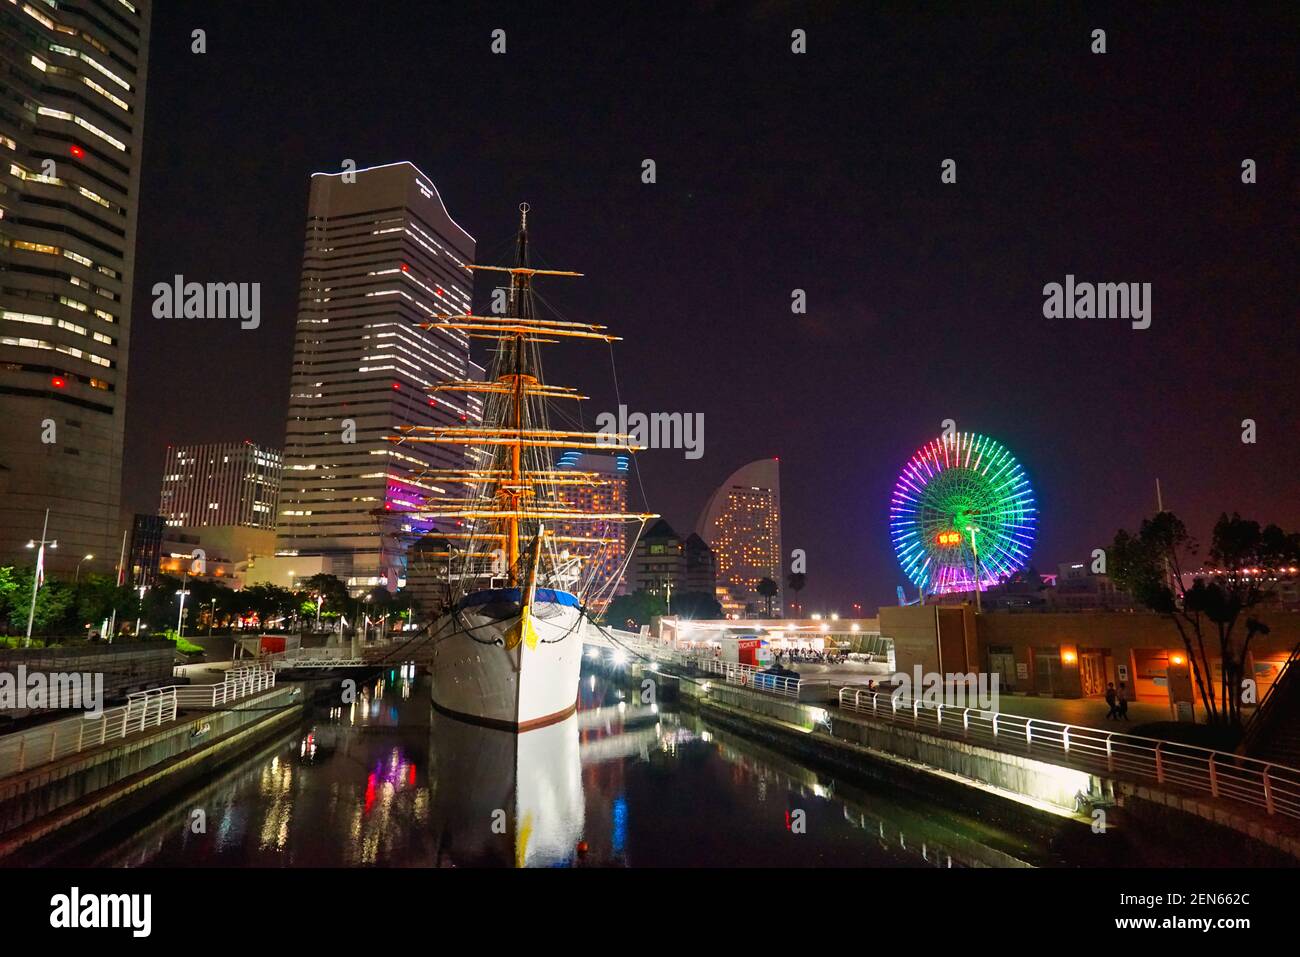 Vista nocturna de Yokohama, donde hay canales, rascacielos, norias, etc. fotografiados en julio de 2015, Japón. Foto de stock